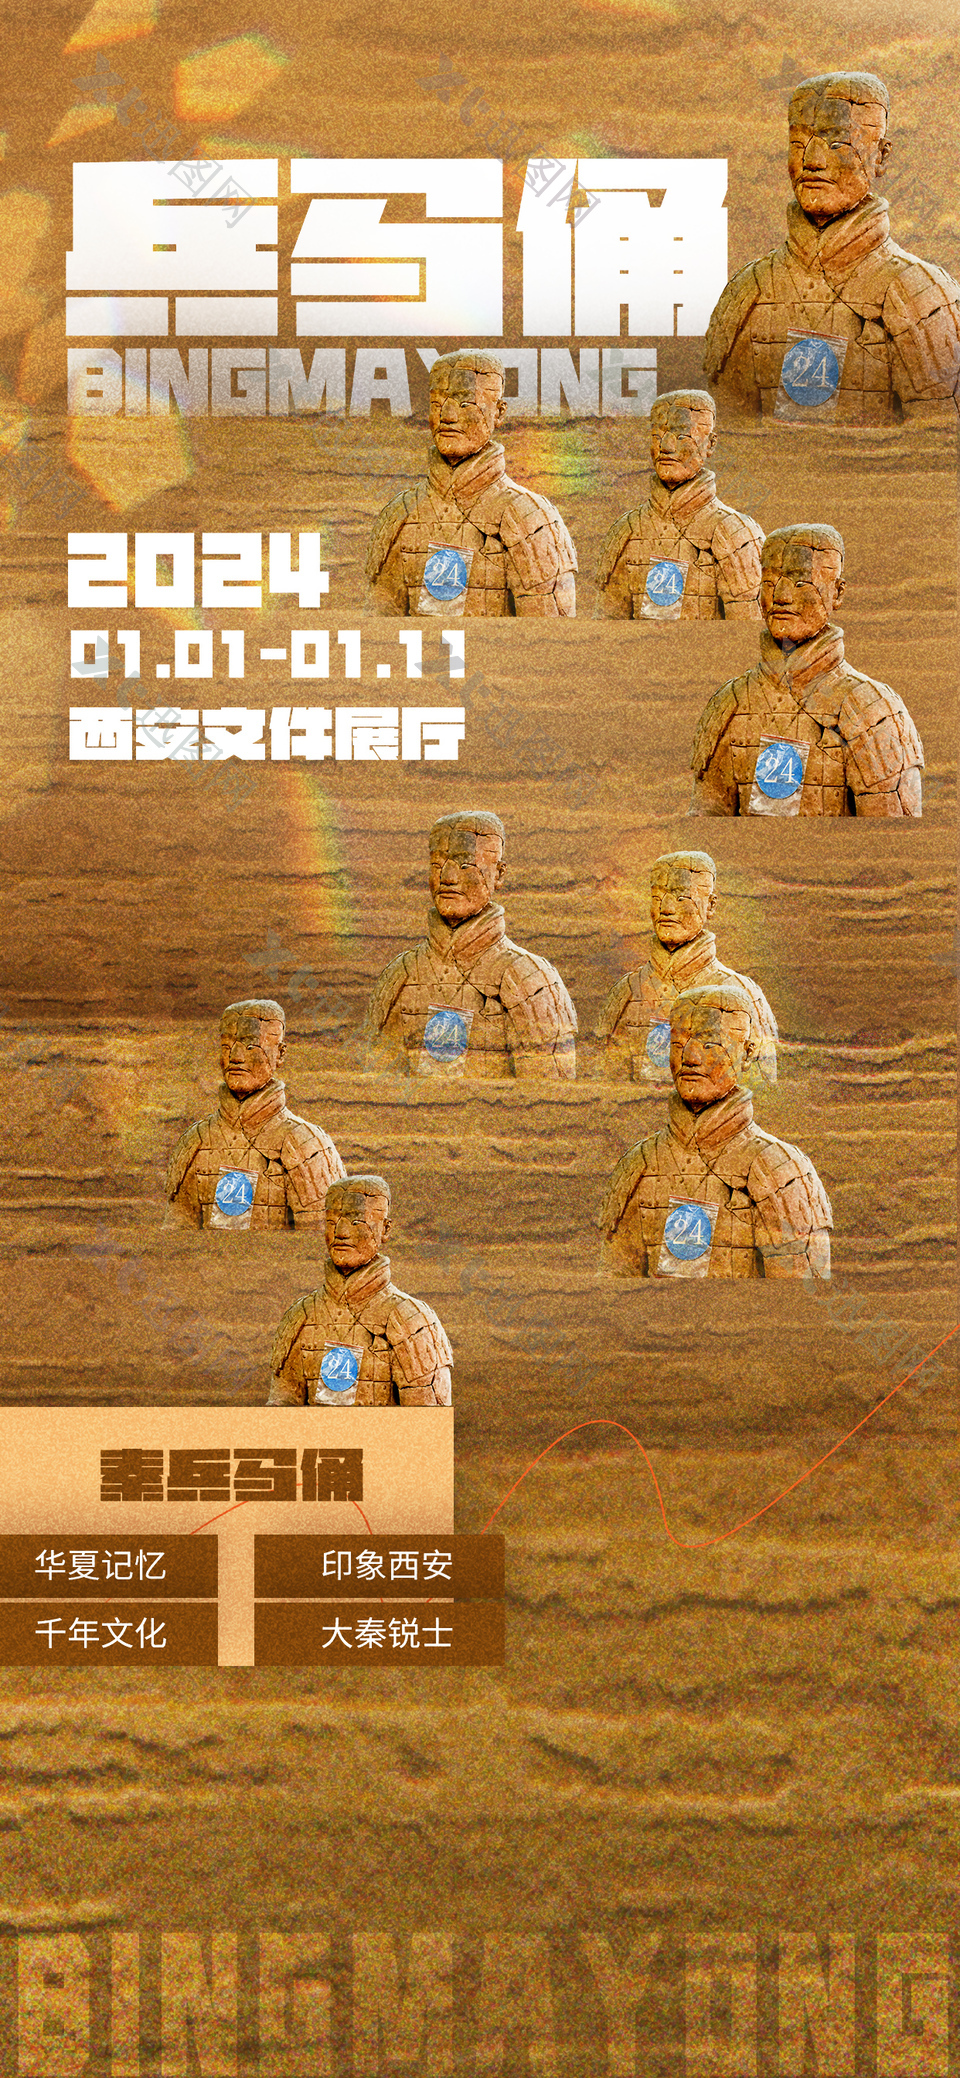 西安兵马俑展厅宣传文化海报设计